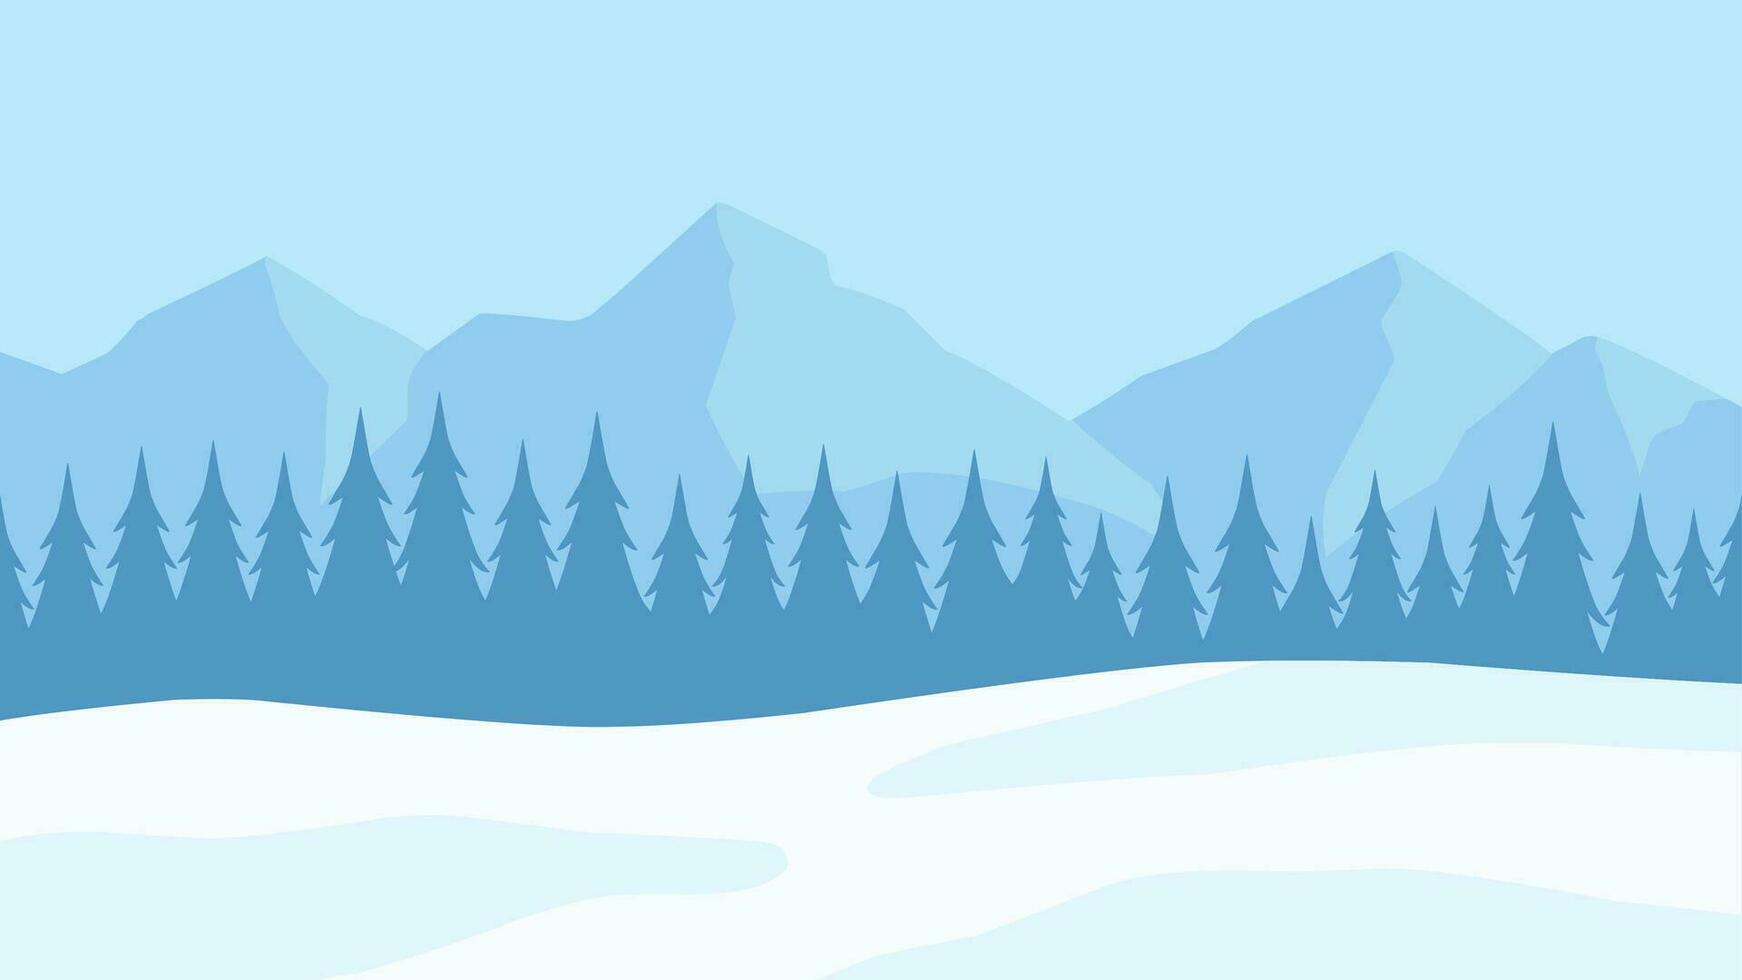 vinter- tall skog landskap vektor illustration. silhuett av snö täckt barr- i kall säsong. snöig tall skog landskap för bakgrund, tapet eller jul